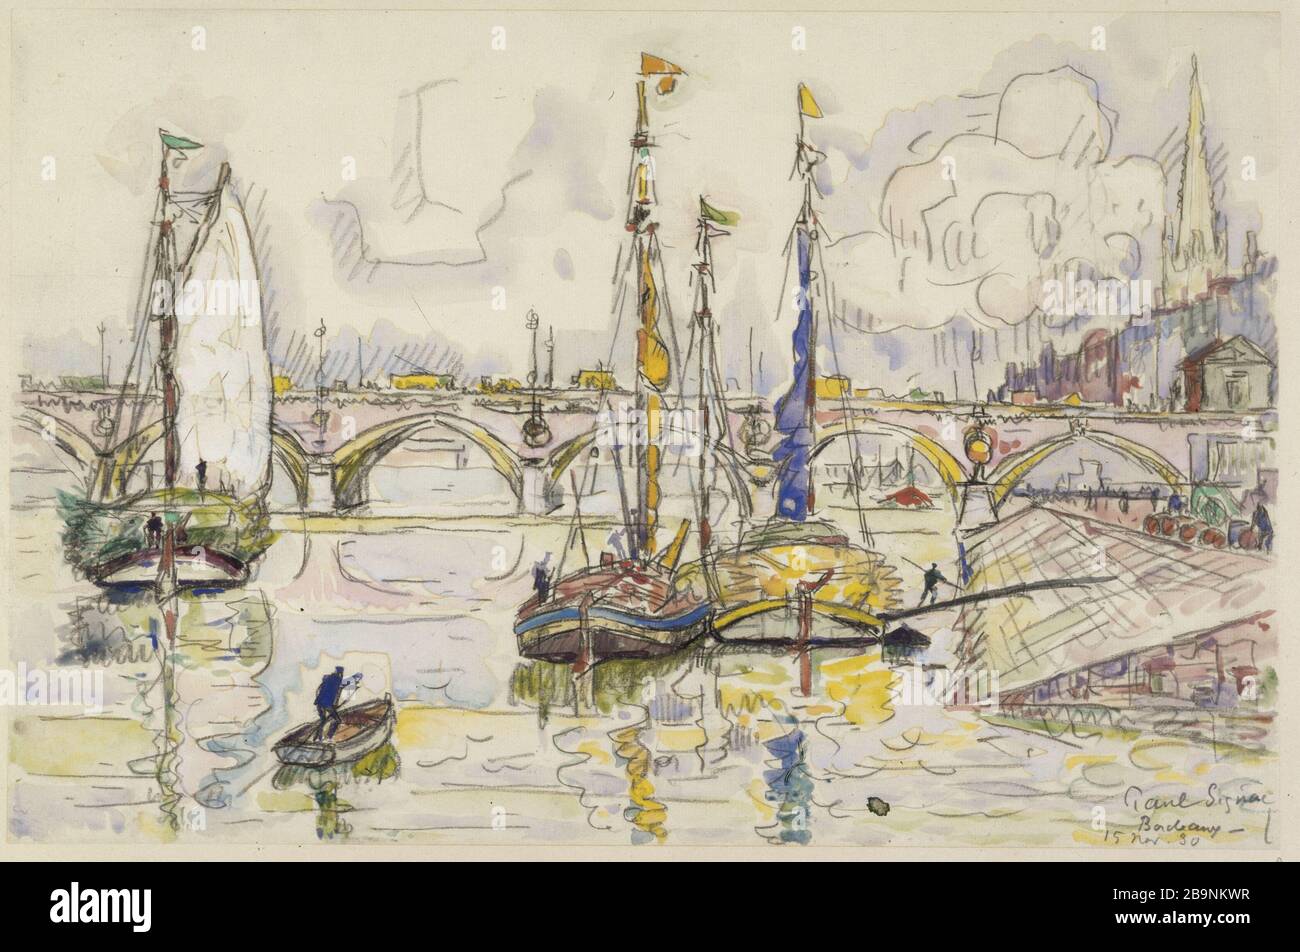 The port of Bordeaux Paul Signac (1863-1935). 'Le port de Bordeaux'. Aquarelle sur papier, 1930. Musée des Beaux-Arts de la Ville de Paris, Petit Palais. Stock Photo